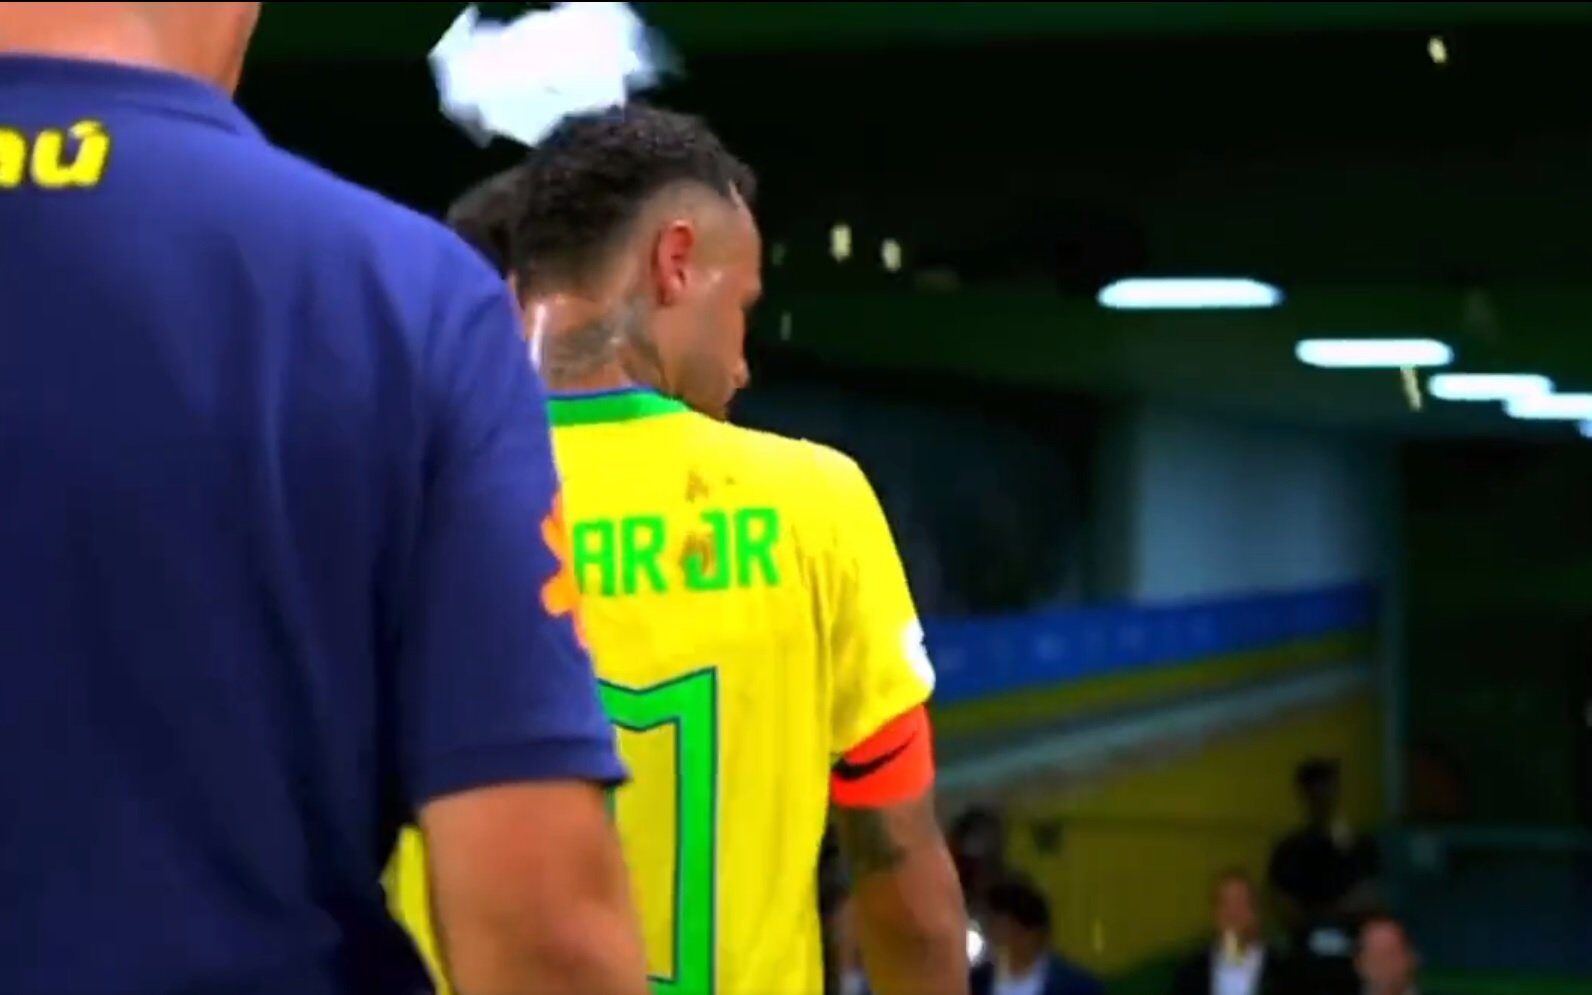 Brasil x Venezuela: empate entra para lista de vexames da Seleção